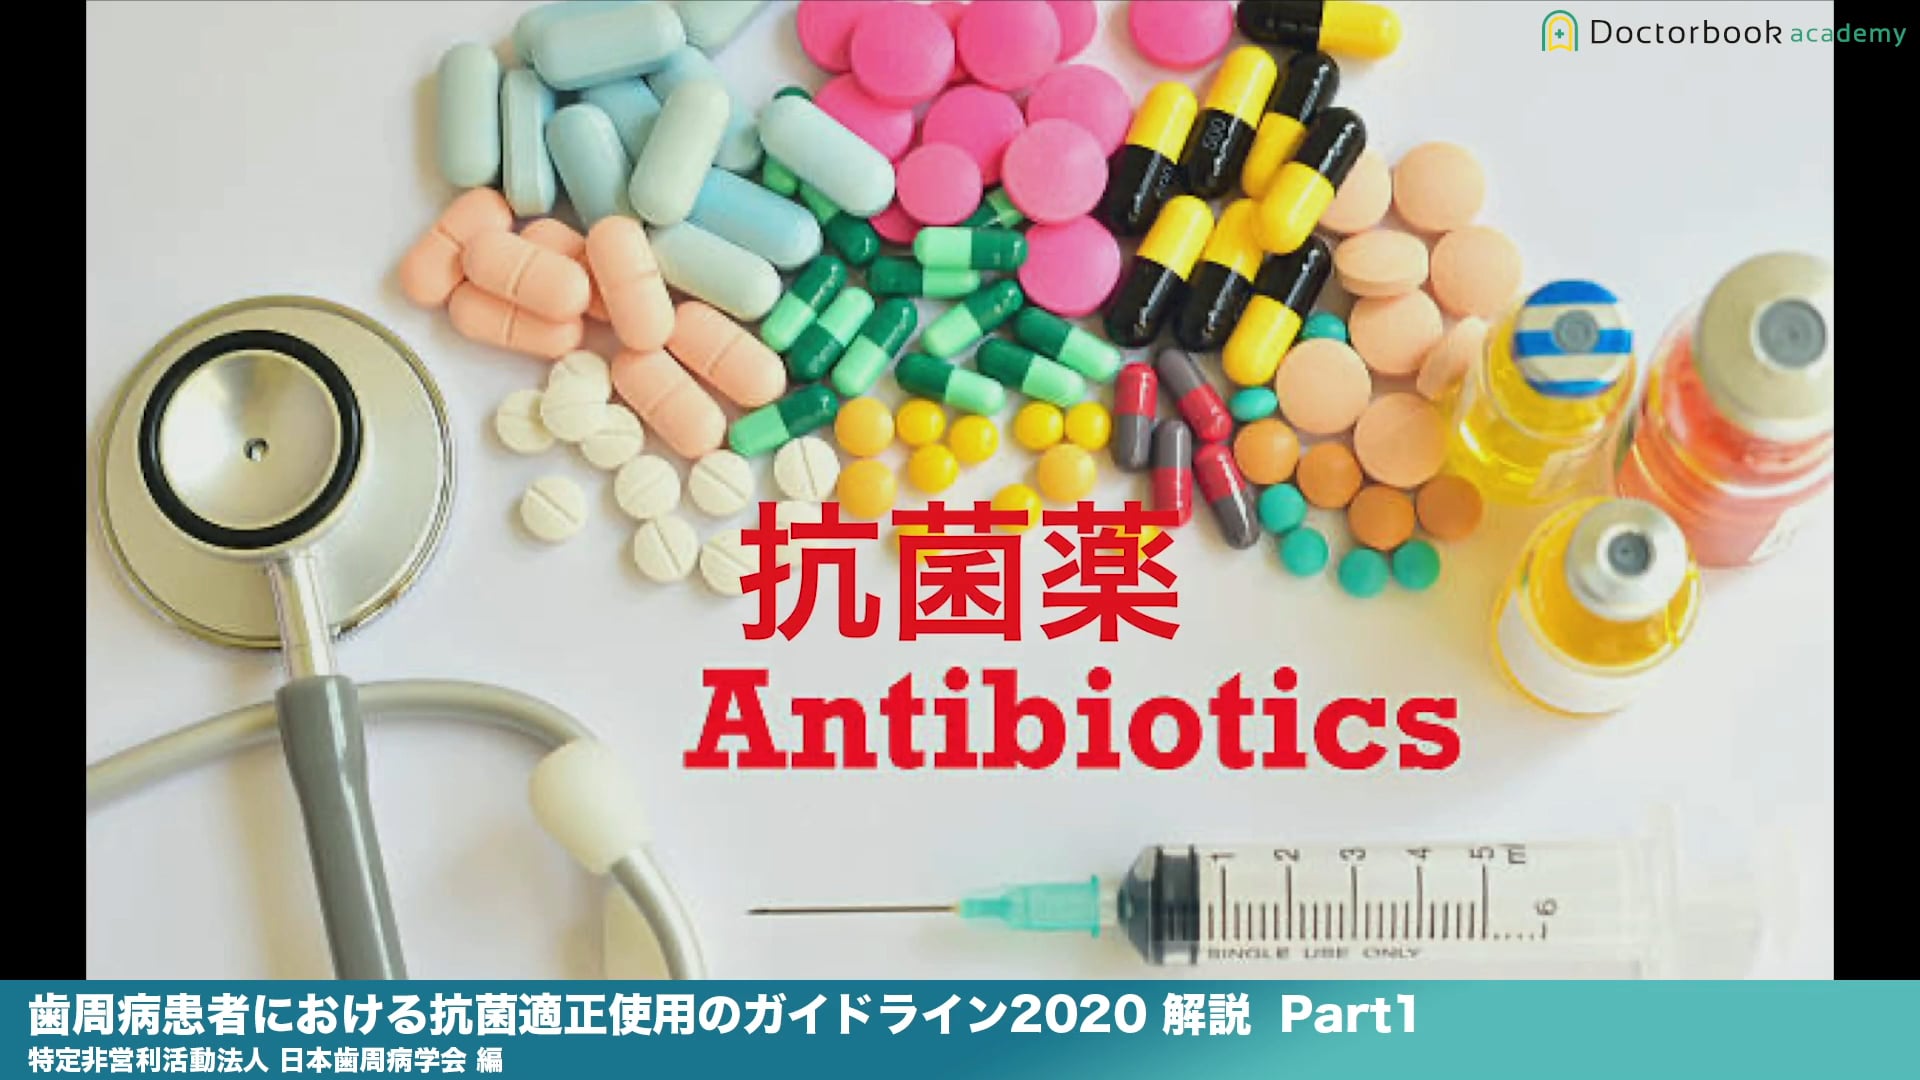 『歯周病患者における抗菌薬適正使用のガイドライン2020 』解説 Part1